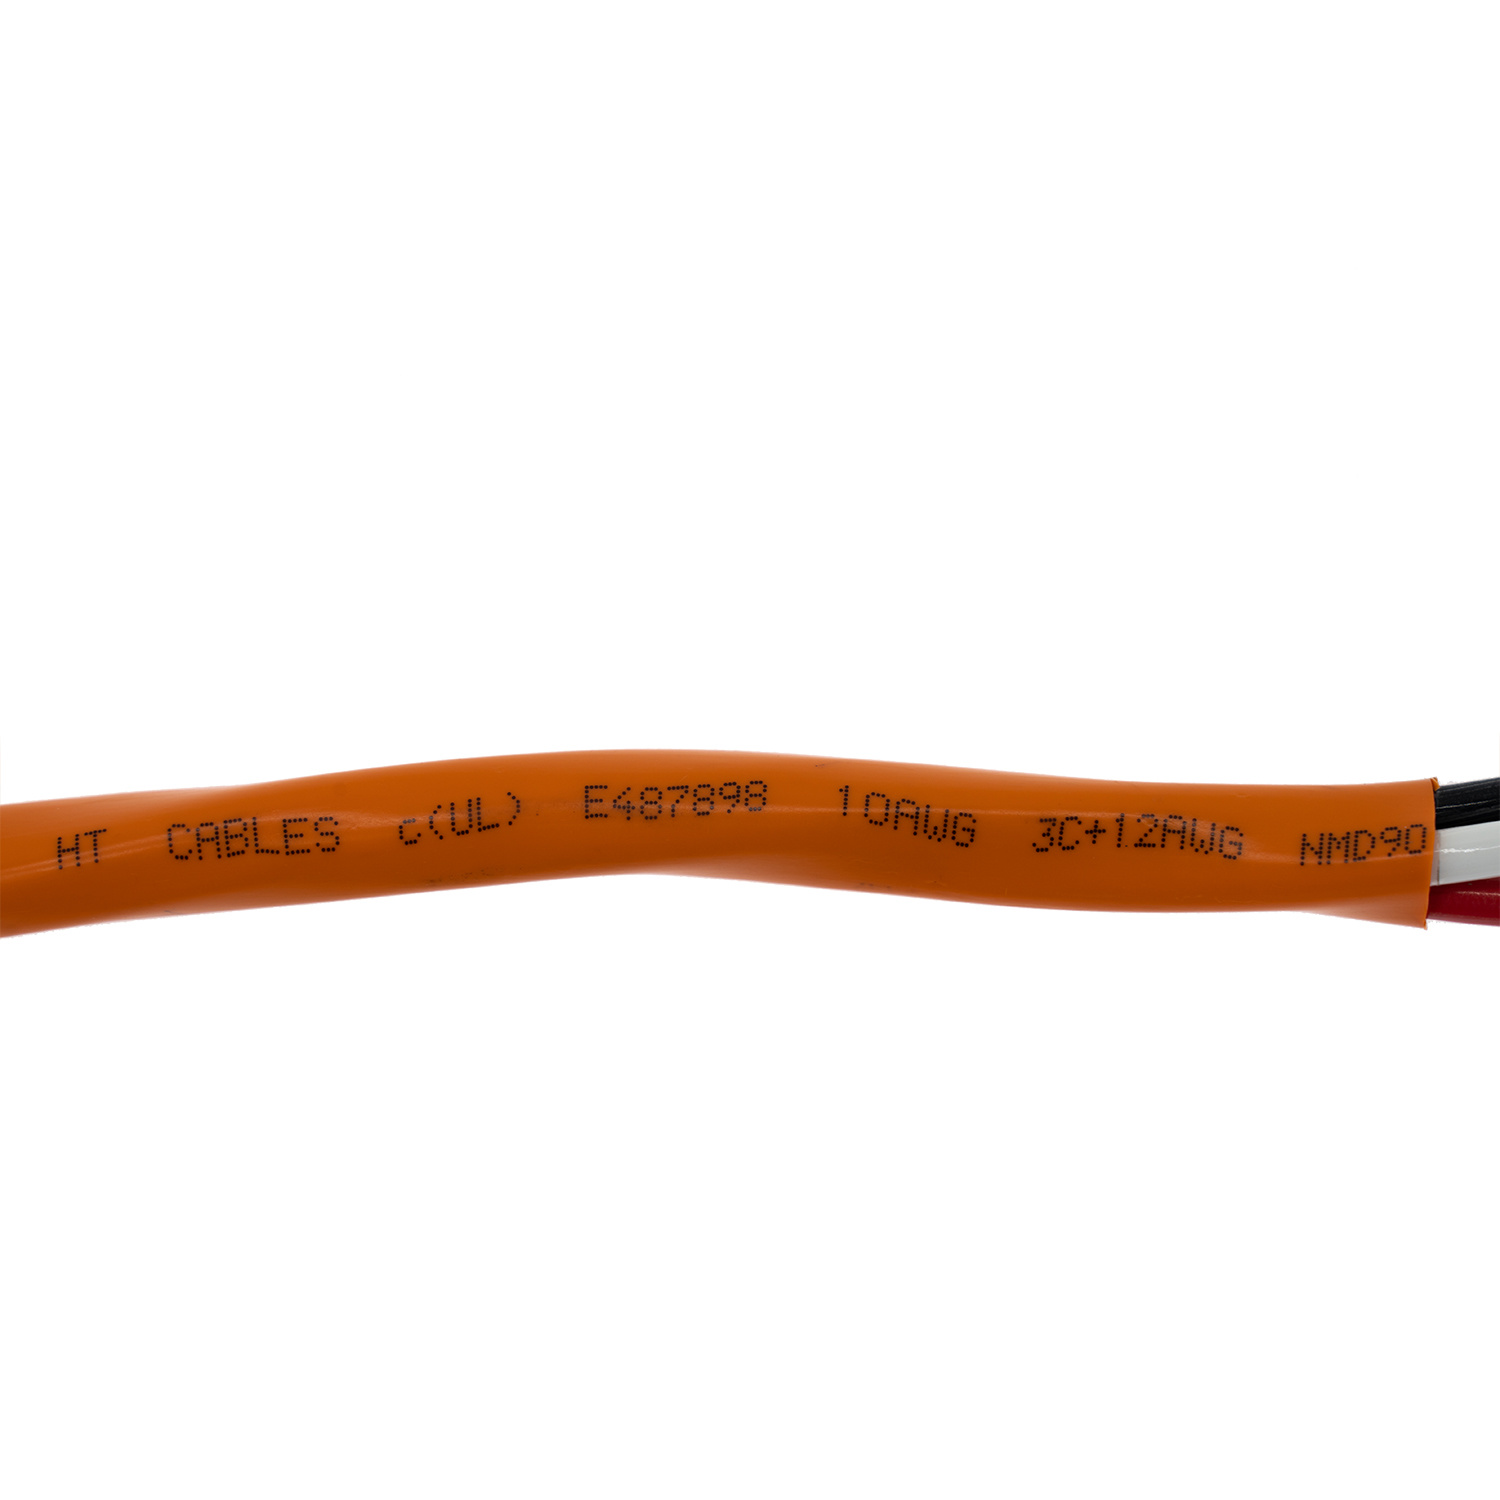 
                Cable de carcasa de PVC de 14-2 14-3 12-2 12-3 10-3 10-2 AWG 14/2 Nmd90 cable
            